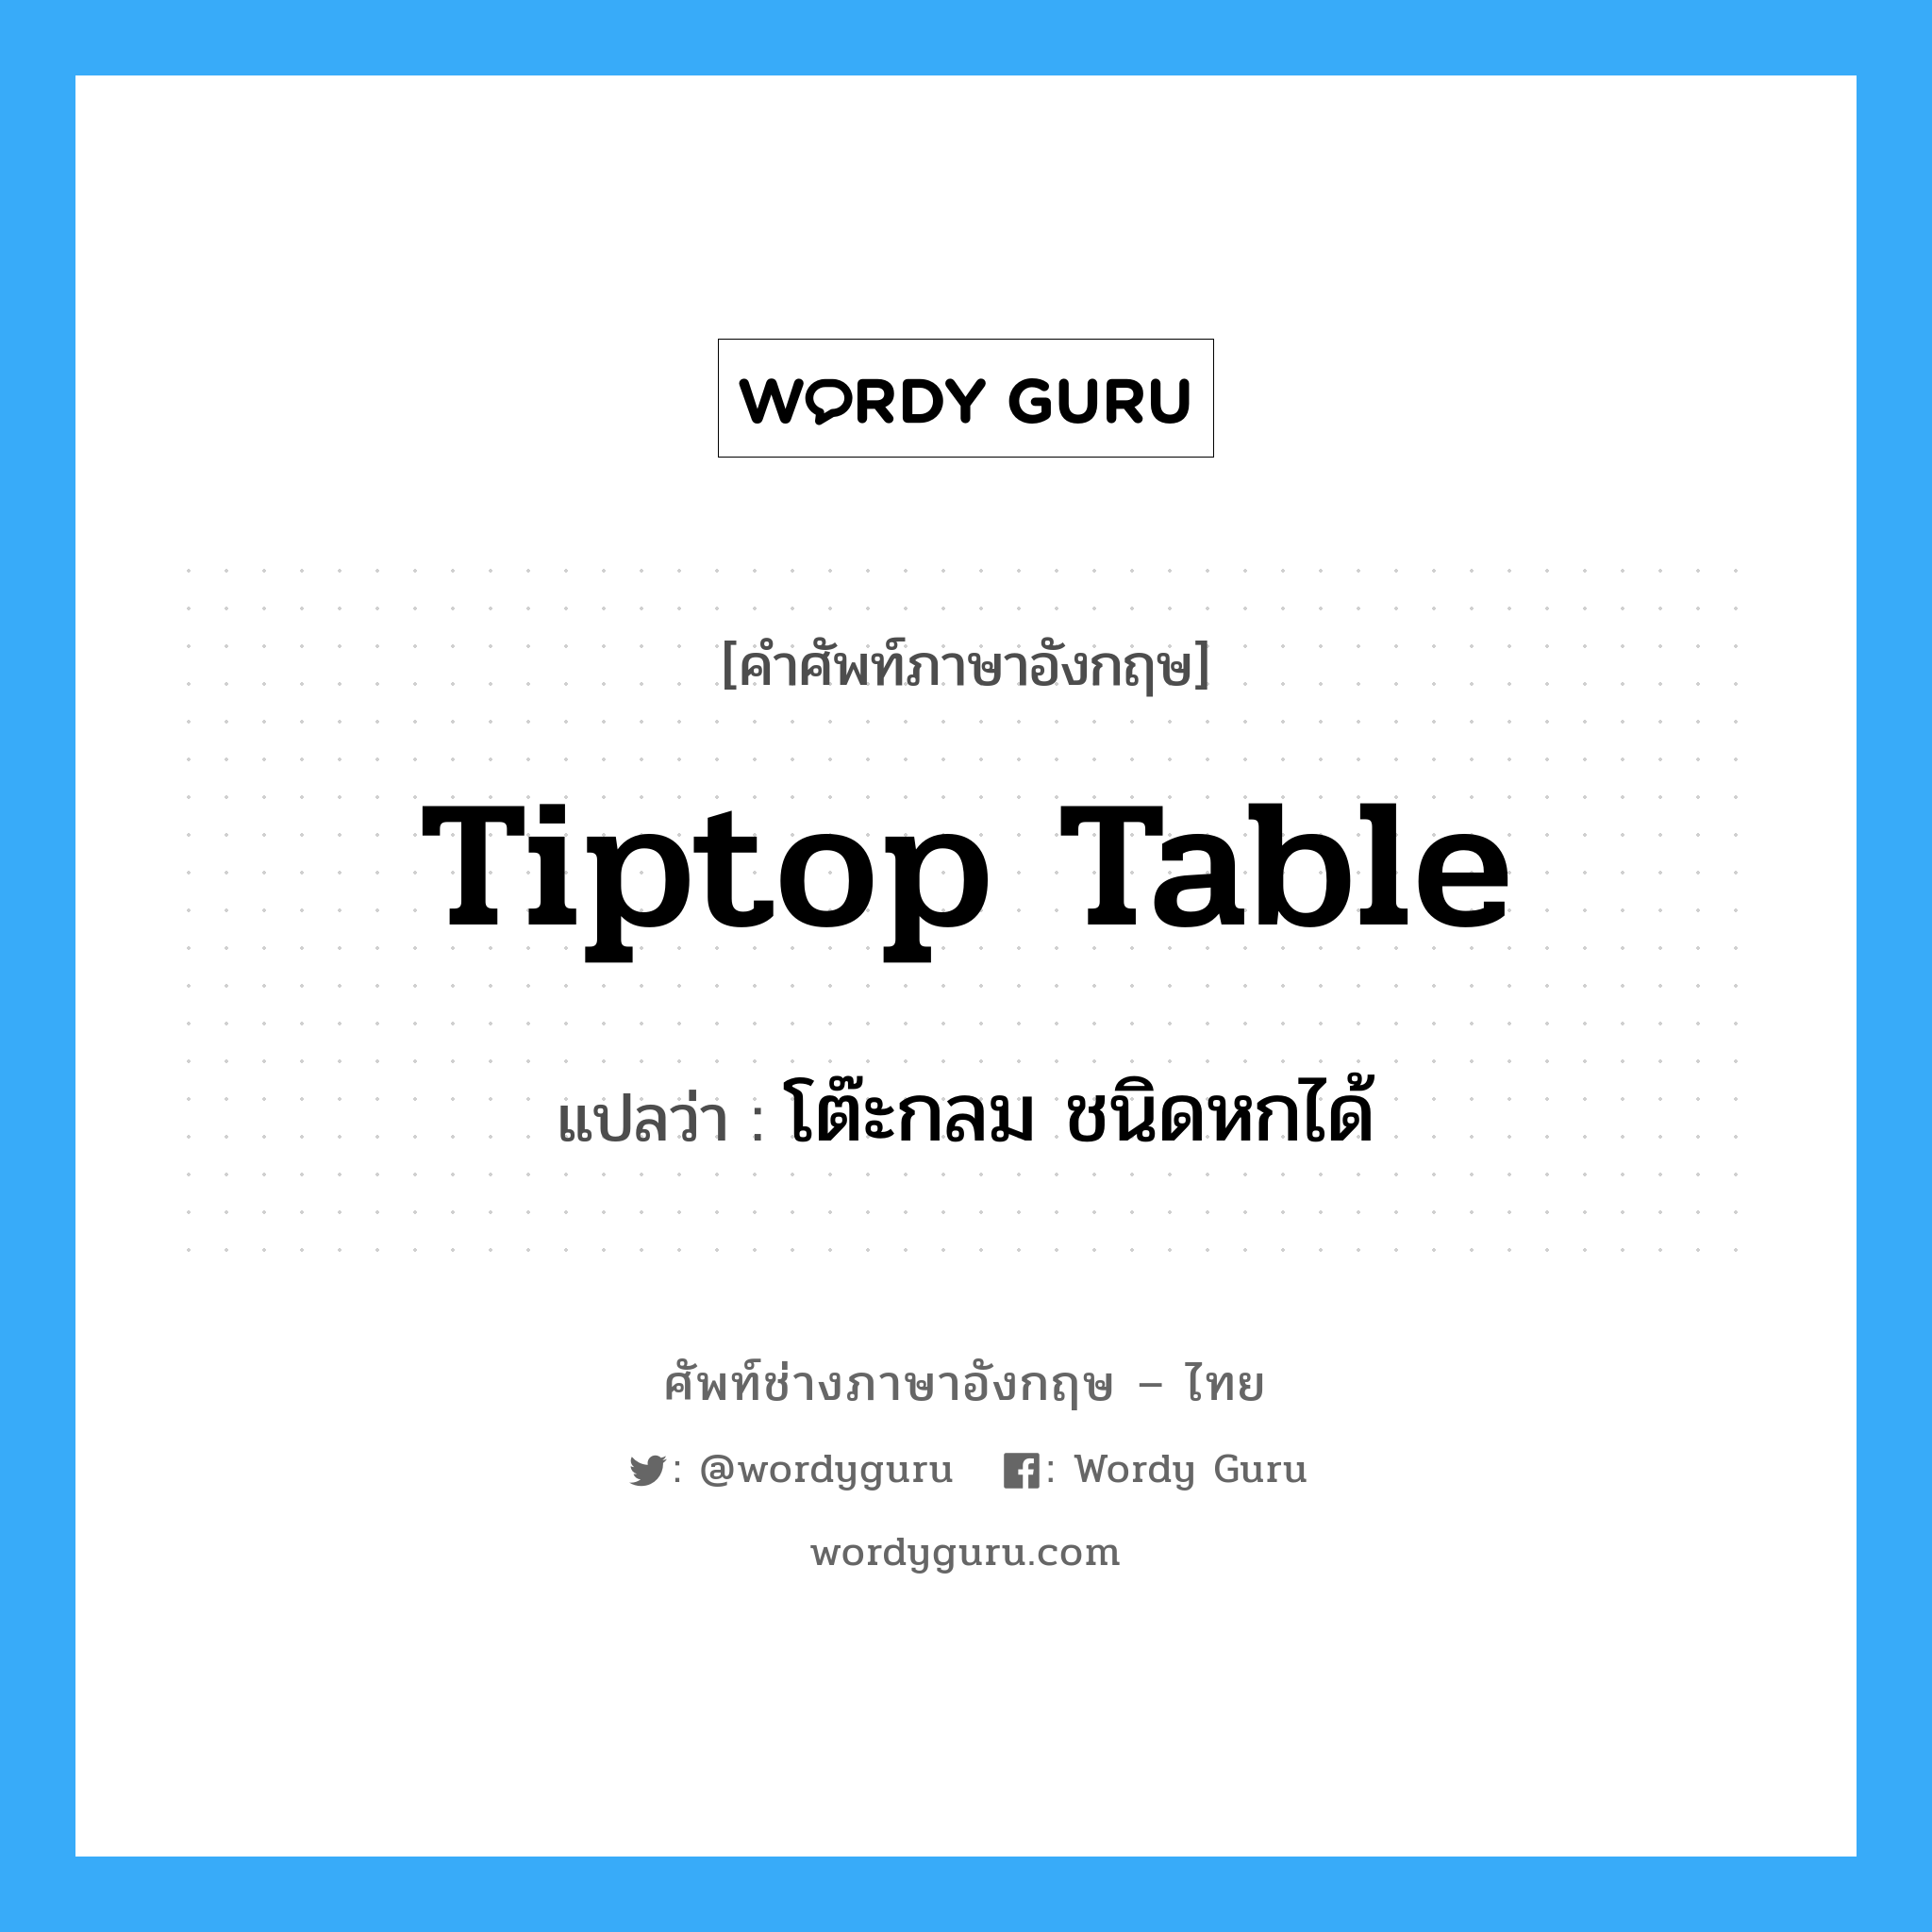 โต๊ะกลม ชนิดหกได้ ภาษาอังกฤษ?, คำศัพท์ช่างภาษาอังกฤษ - ไทย โต๊ะกลม ชนิดหกได้ คำศัพท์ภาษาอังกฤษ โต๊ะกลม ชนิดหกได้ แปลว่า tiptop table